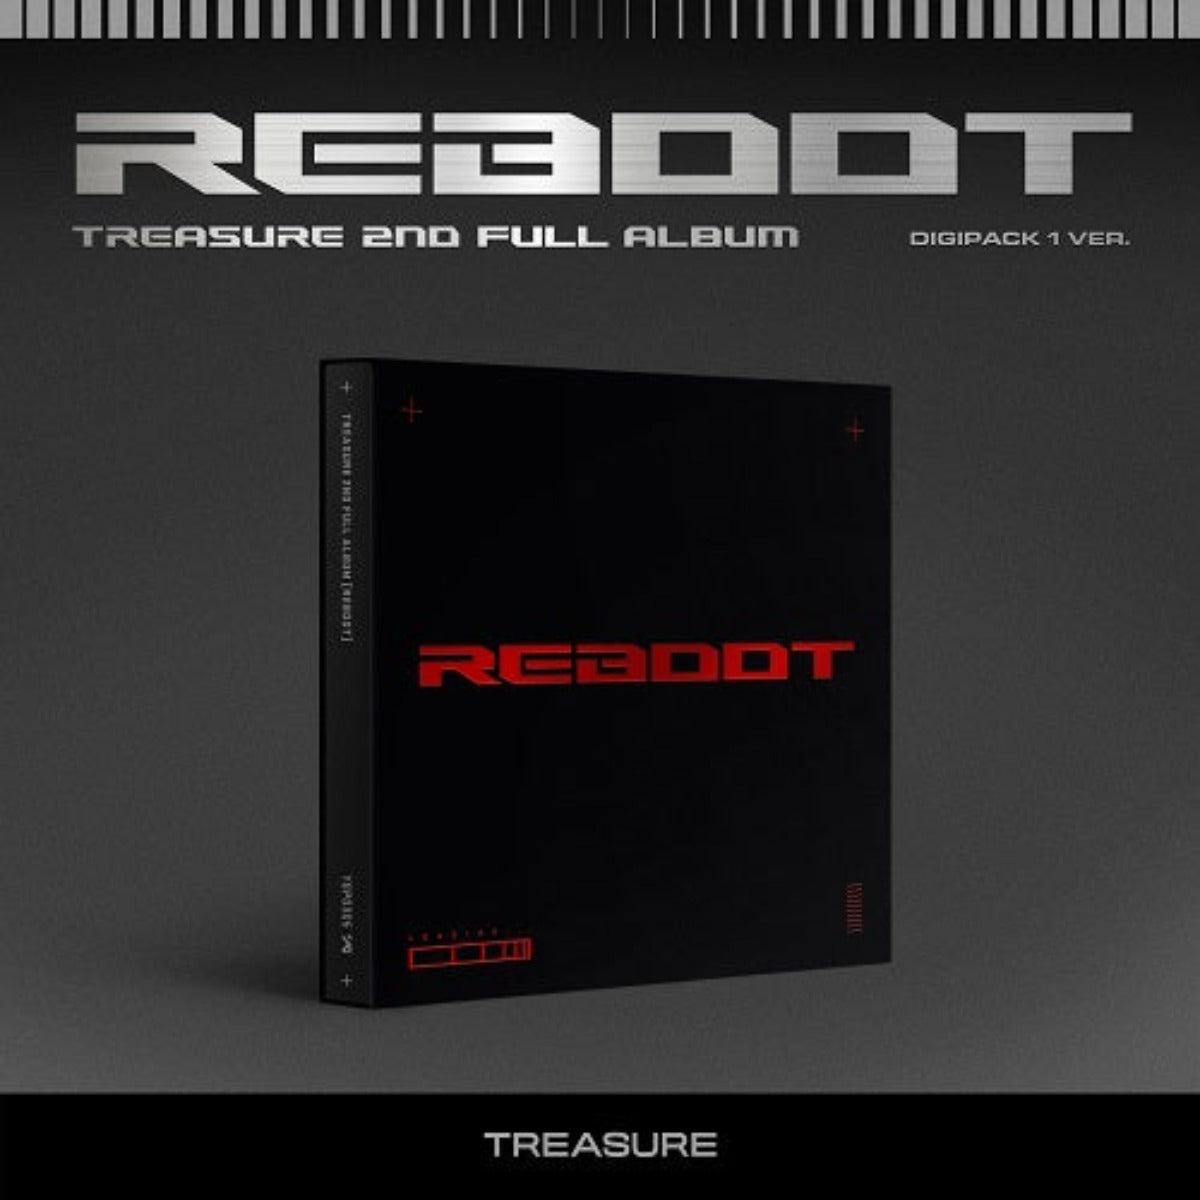 TREASURE 2nd Album  - REBOOT (Digipack Version)